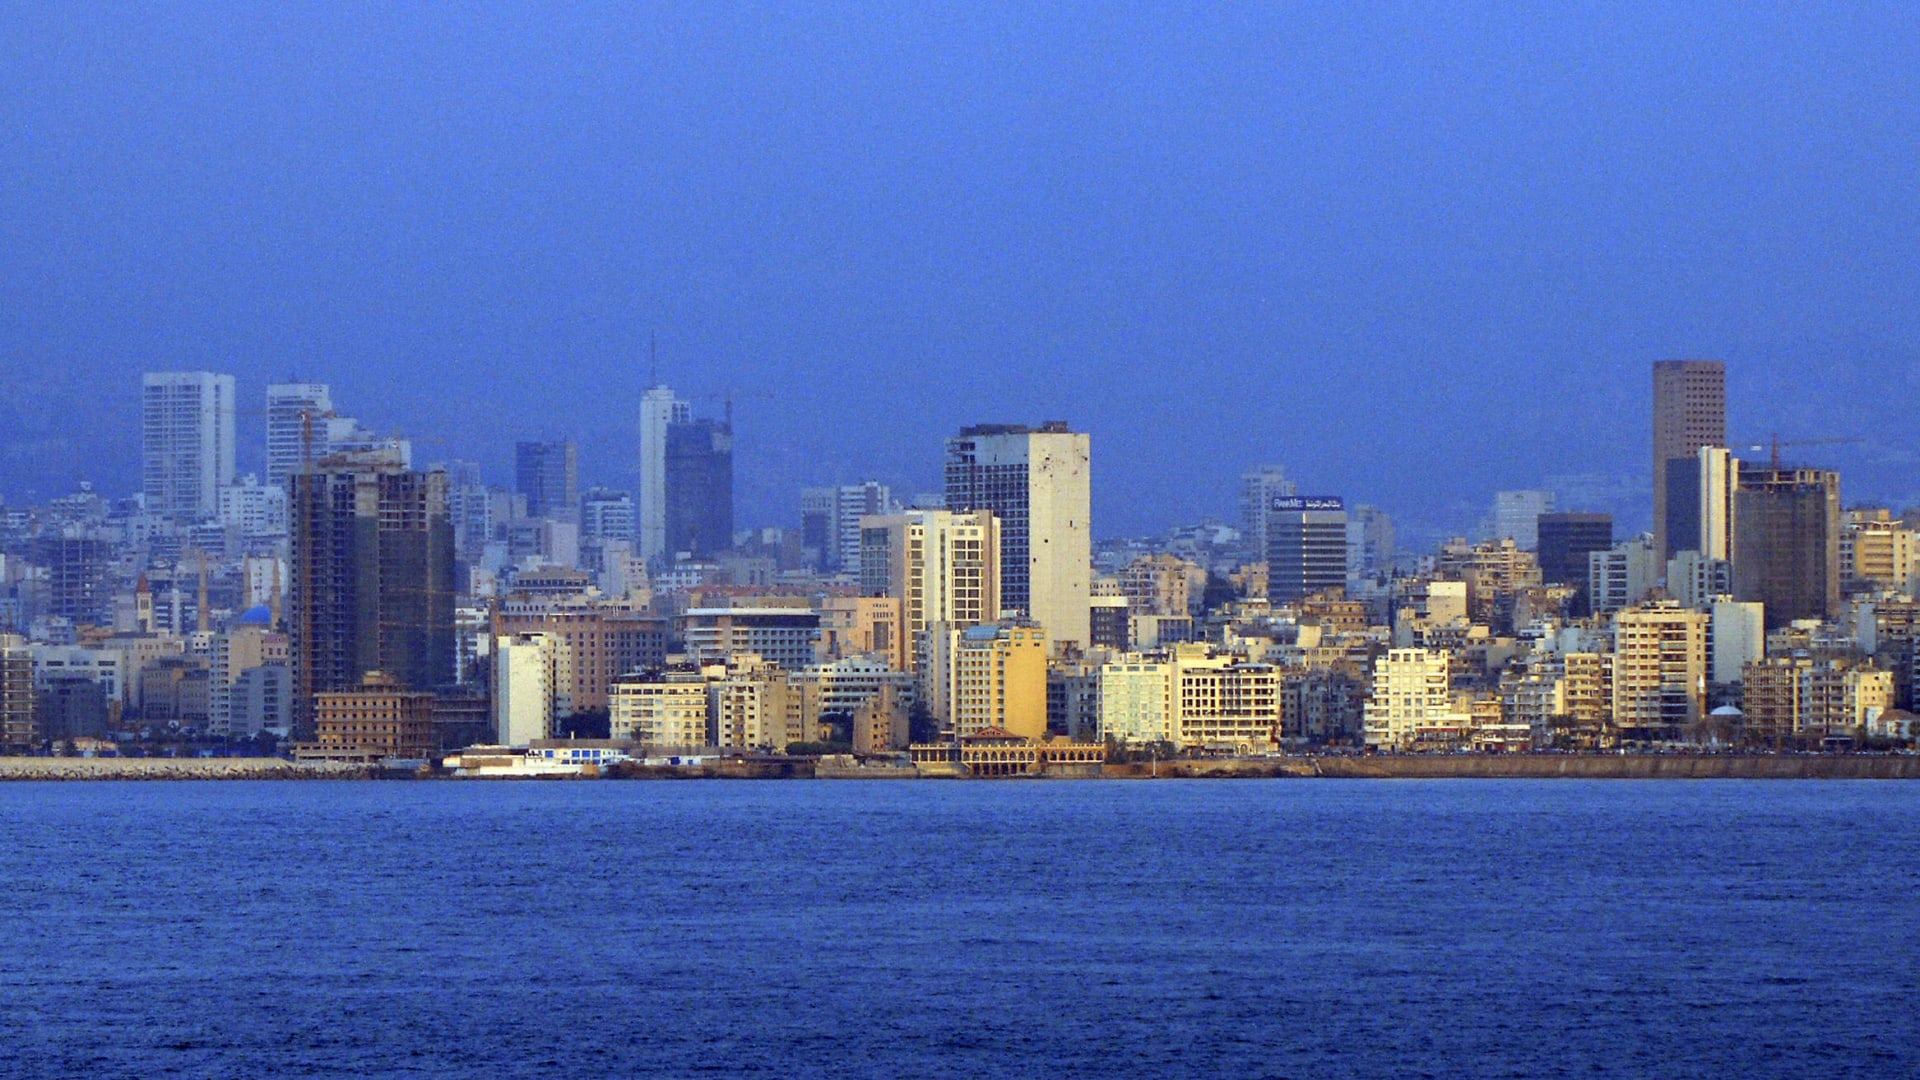 صورة ارشيفية عامة من العاصمة اللبنانية، بيروت